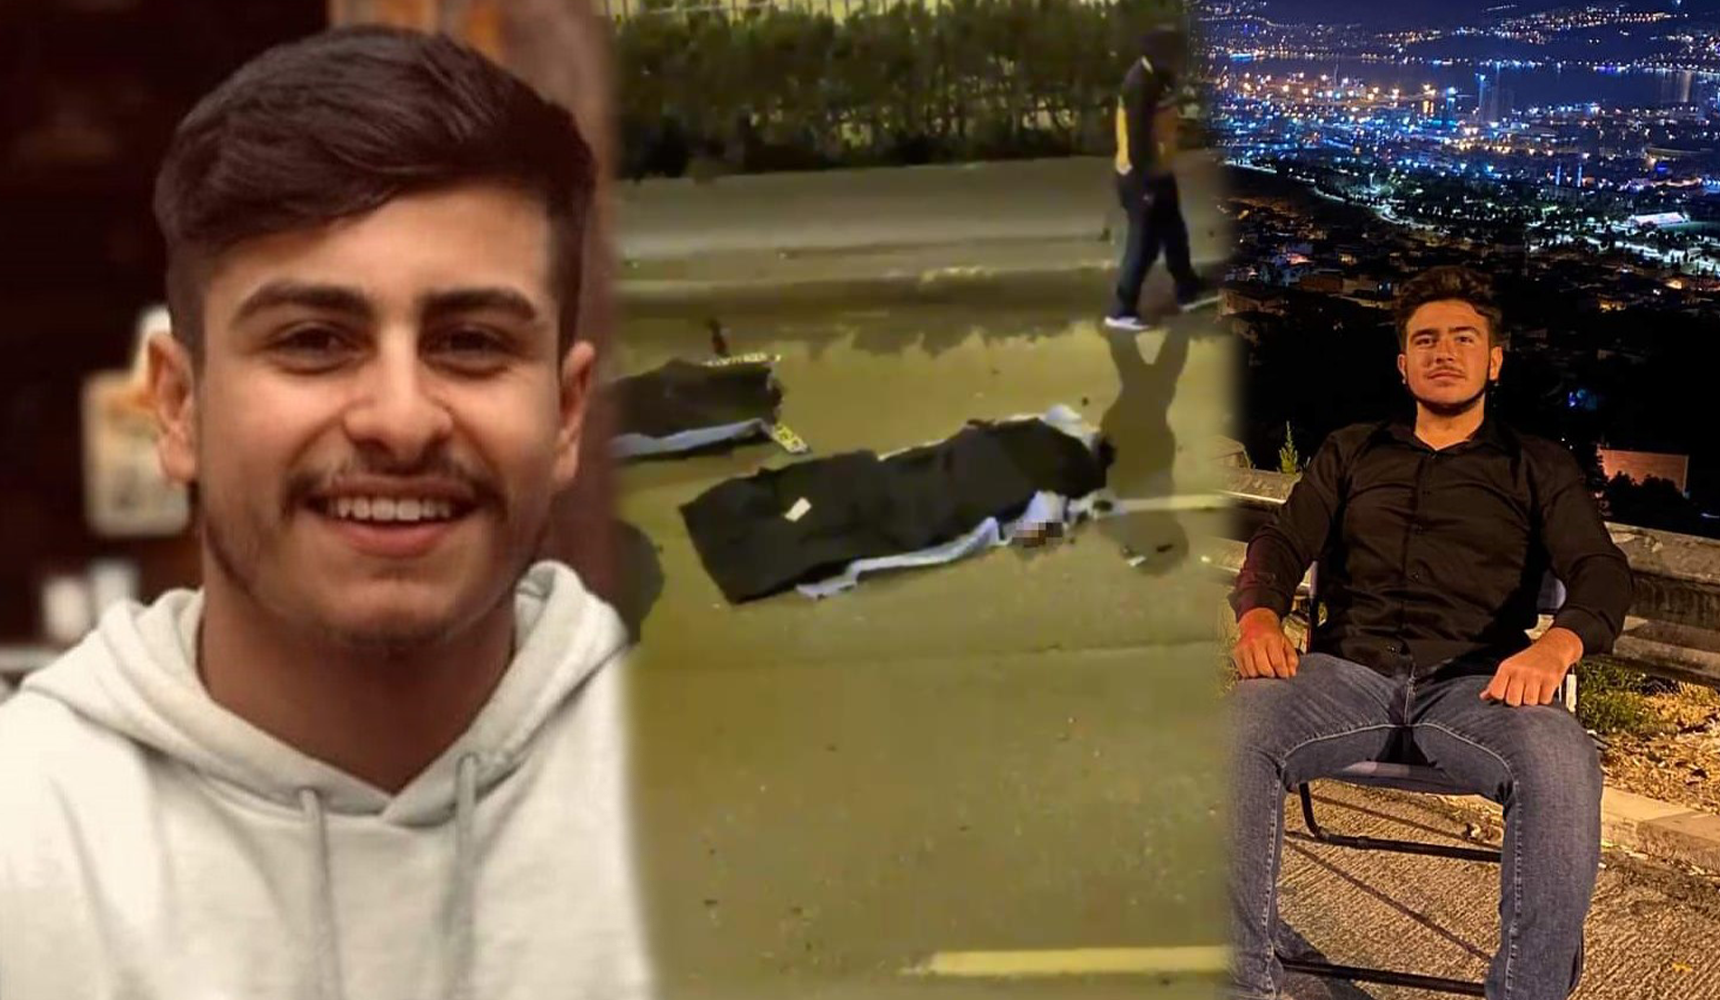 İzmir'deki kazada camdan yola fırlayan 2 arkadaş hayatını kaybetti